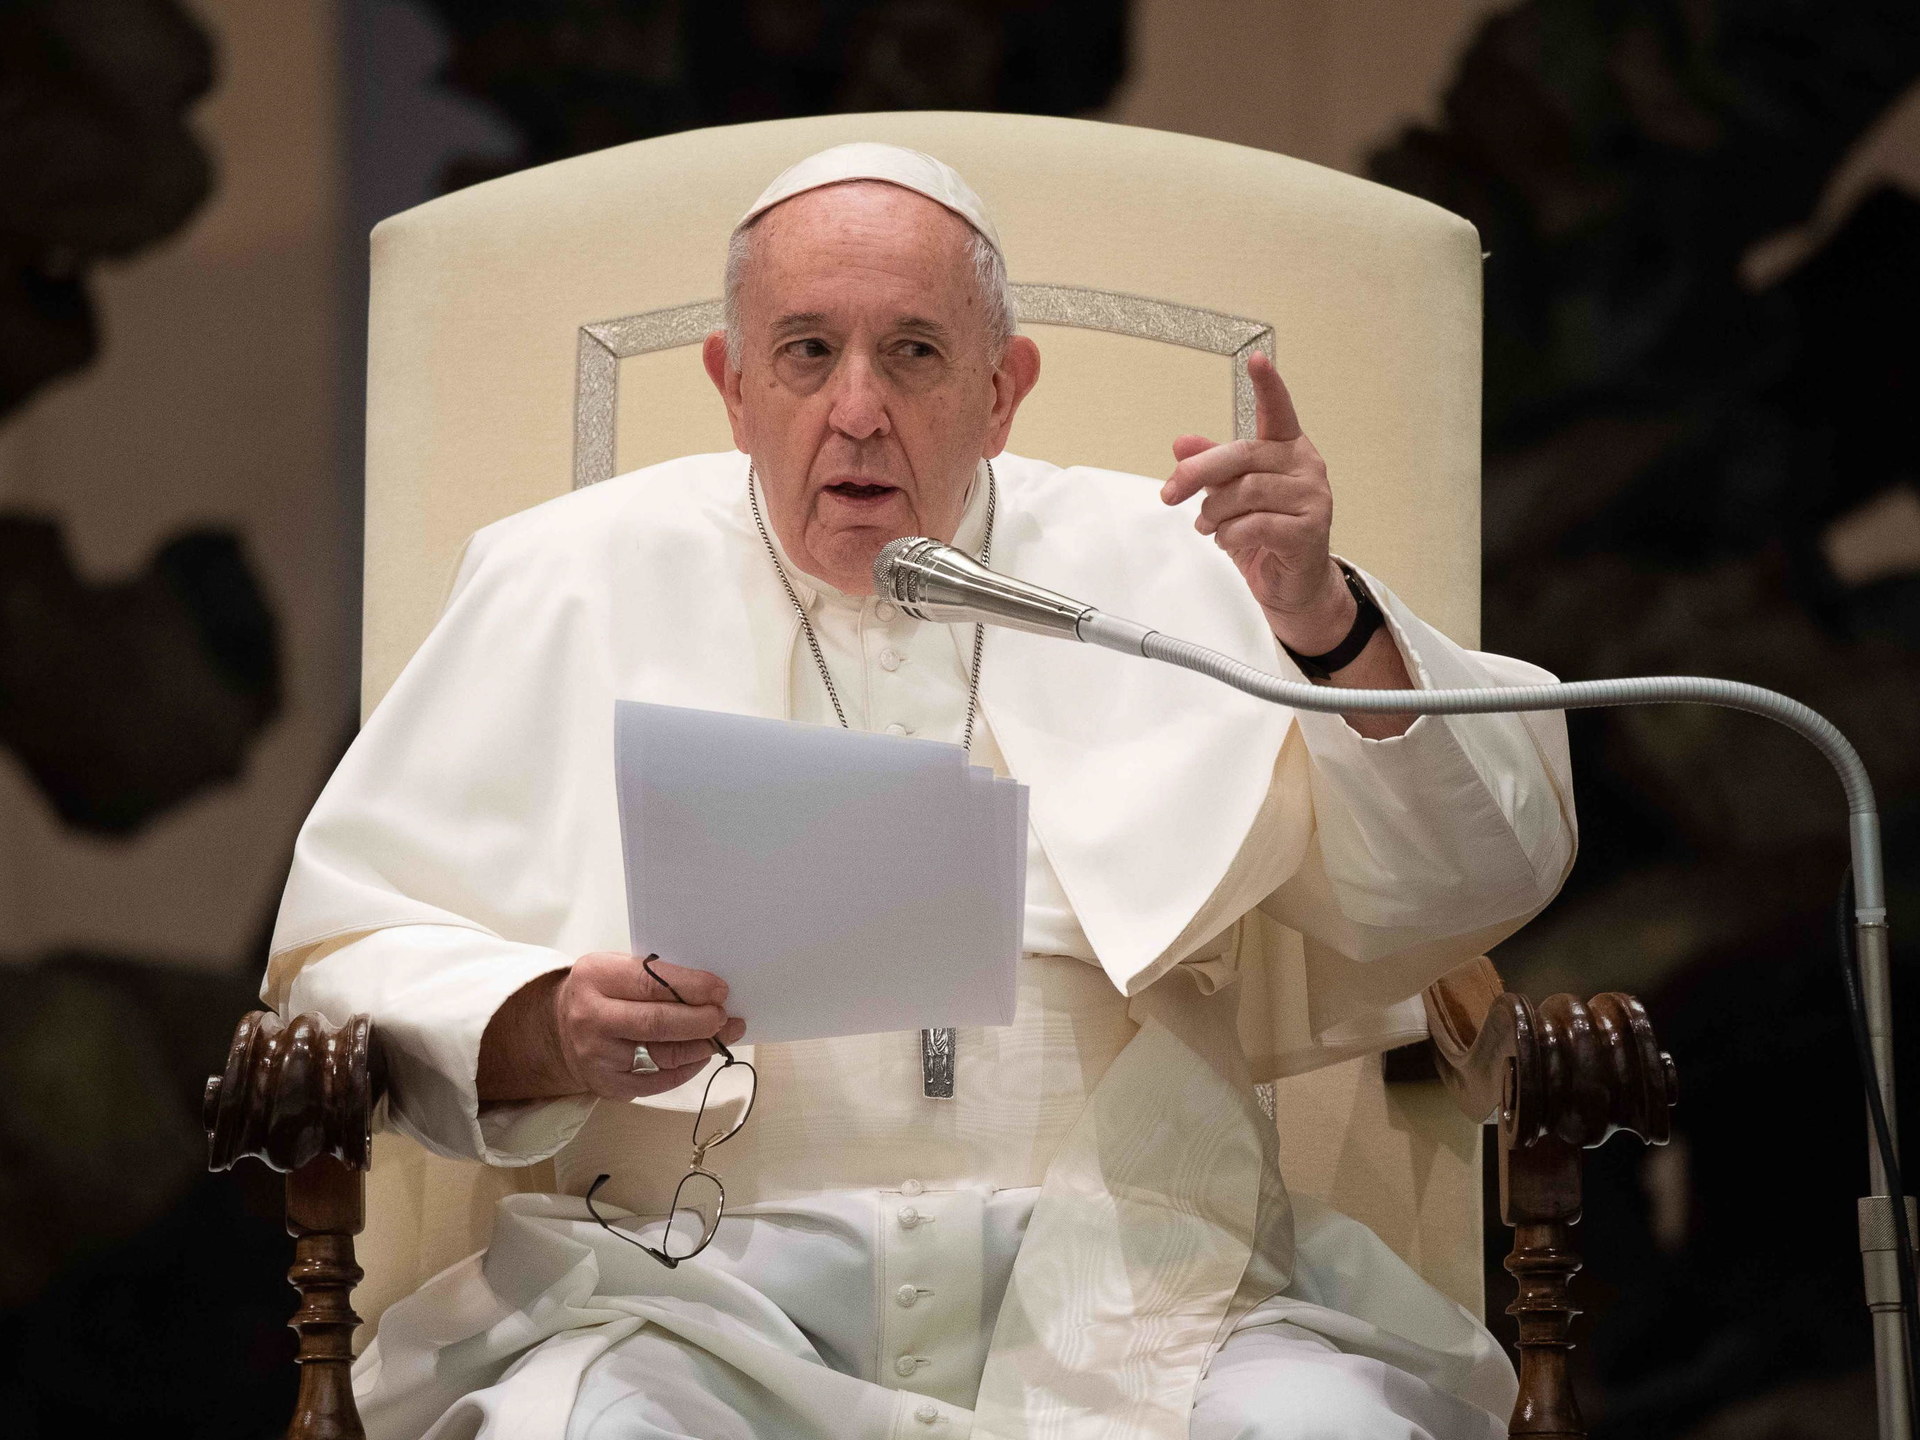 Papiez Franciszek Poparl Legalizacje Zwiazkow Partnerskich Par Homoseksualnych Rmf 24